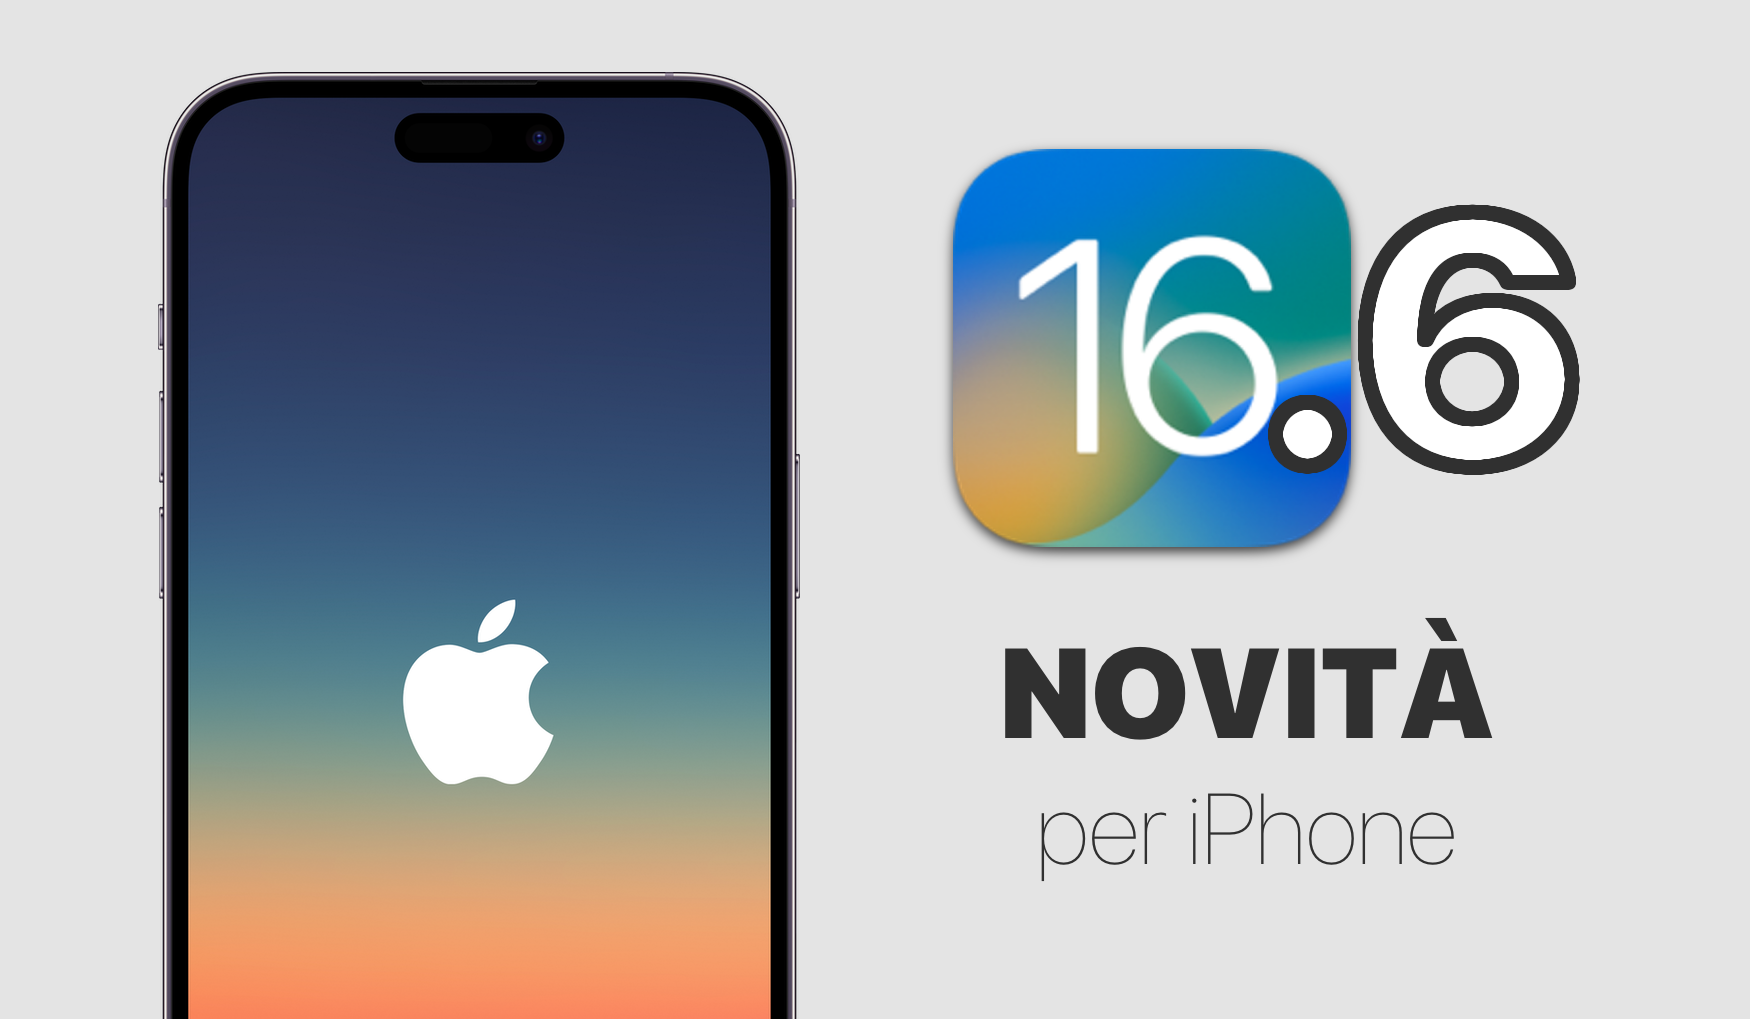 iOS 16, iOS 16.6, Novità, iPhone, iPad